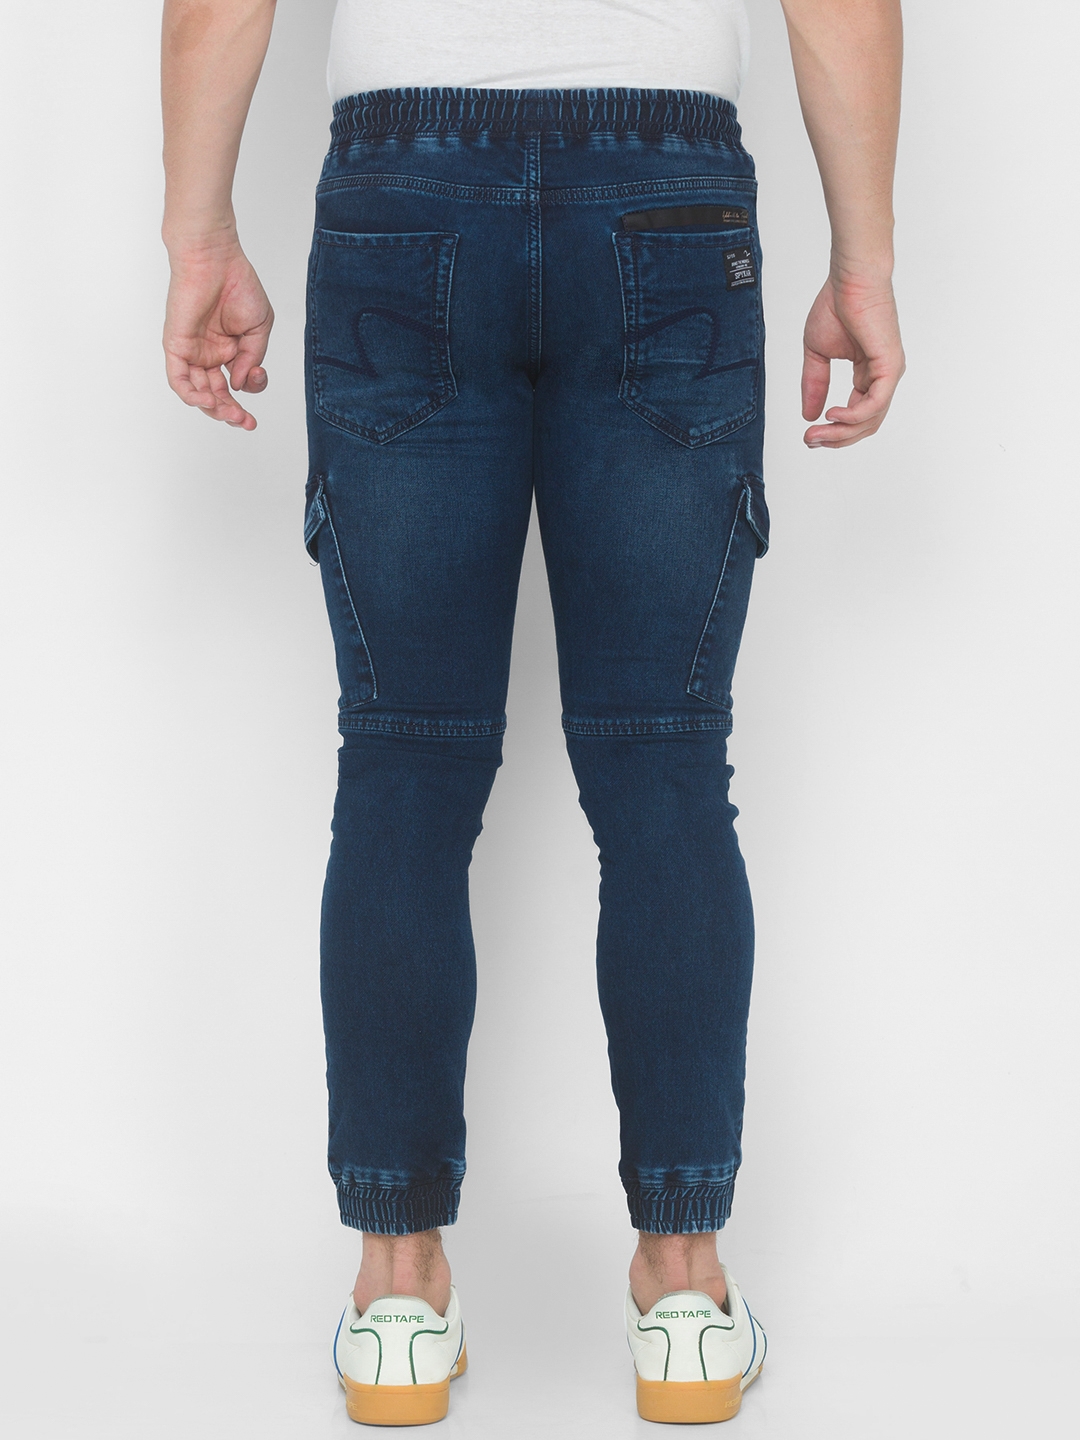 Spykar | Men's Blue Cotton Solid Joggers Jeans 2